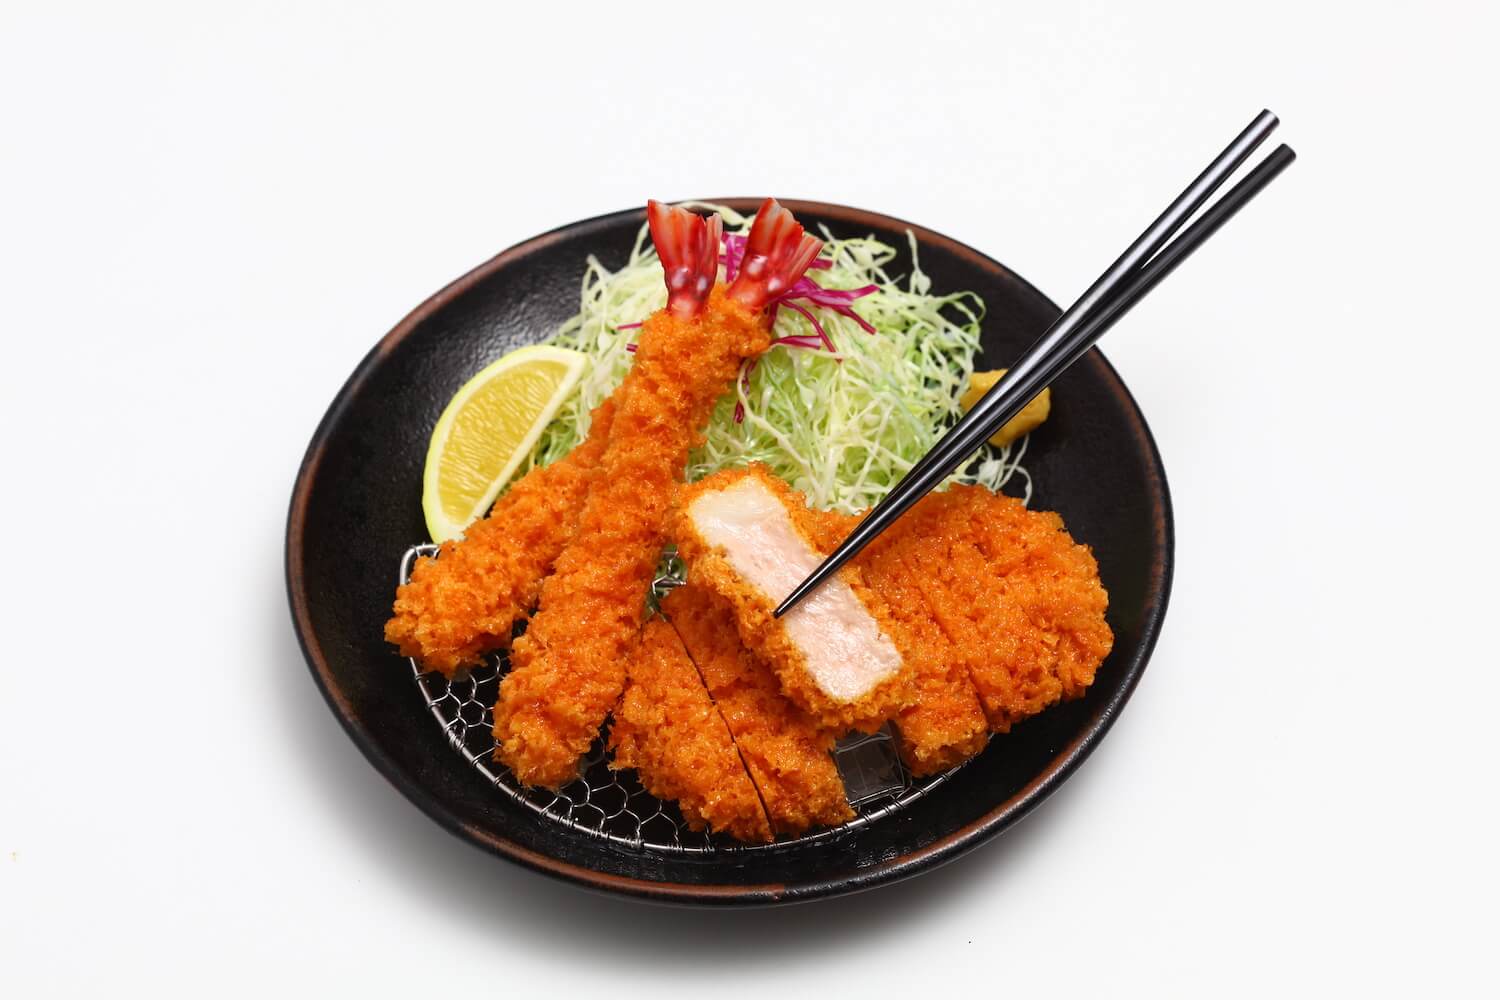 Fake Food - Fried Shrimp and Pork